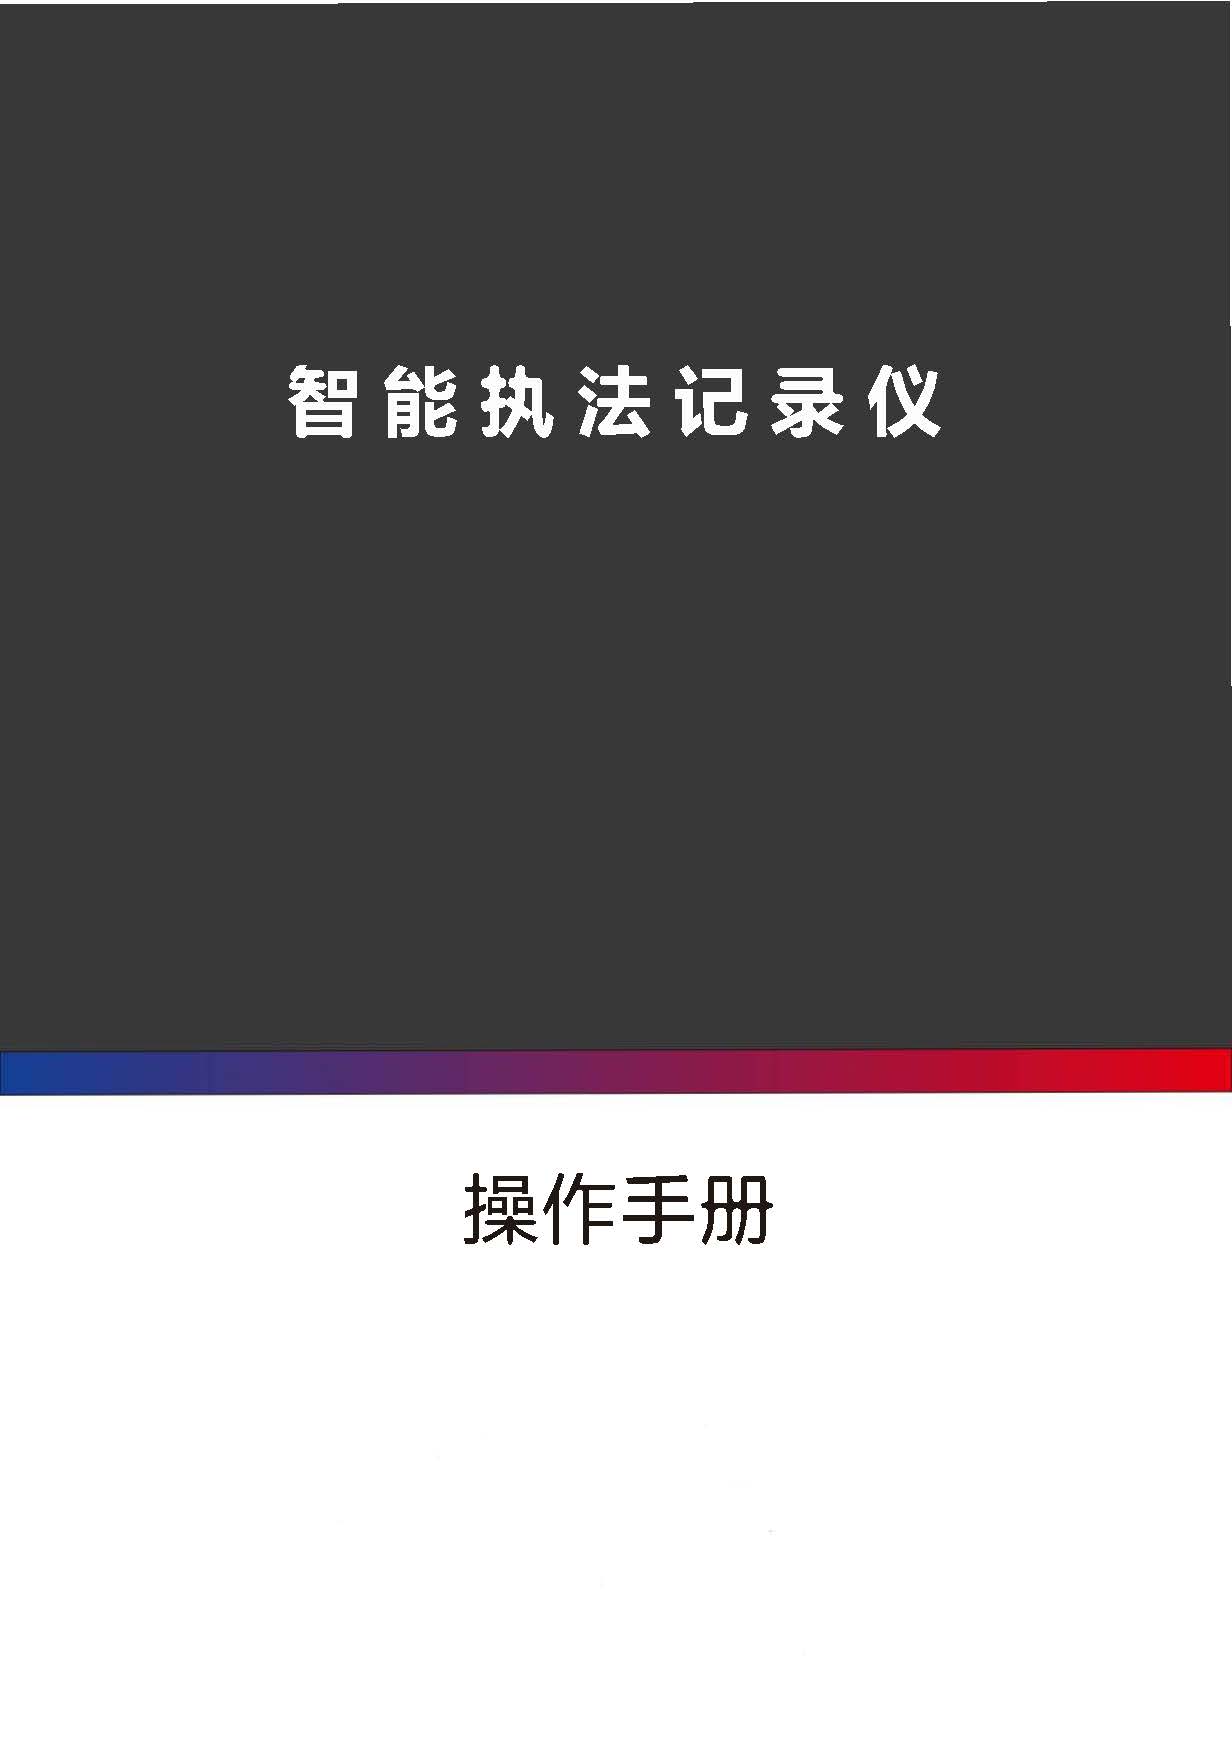 银翔DSJ-YXZA1Y2智能执法仪操作说明_页面_01.jpg